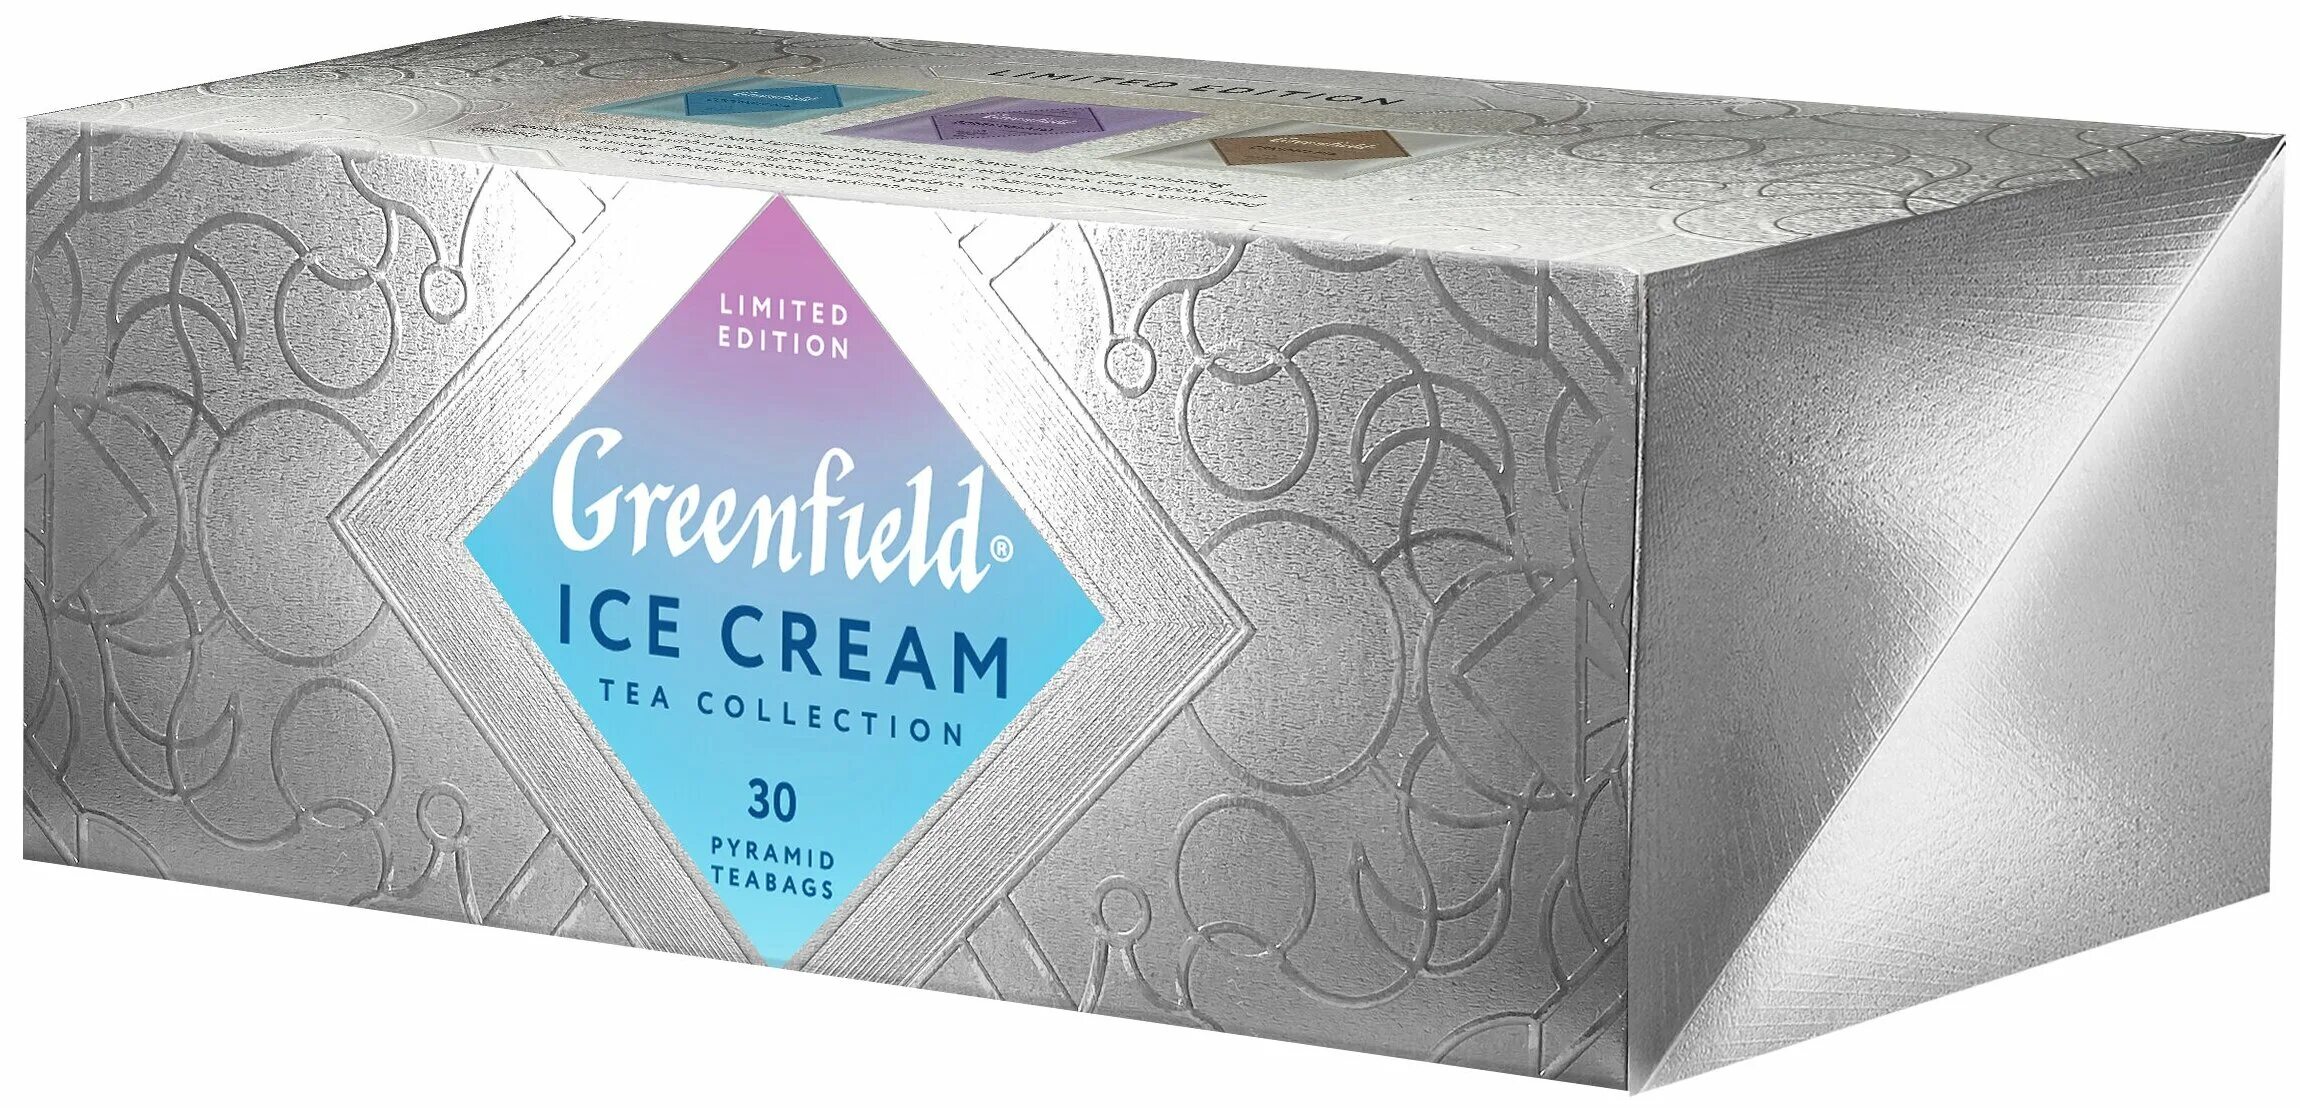 Чай черный Greenfield Limited Edition Ice Cream. Гринфилд Ice Cream набор. Гринфилд Limited Edition. Чай Гринфилд Coconut Ice. Чай мороженое купить